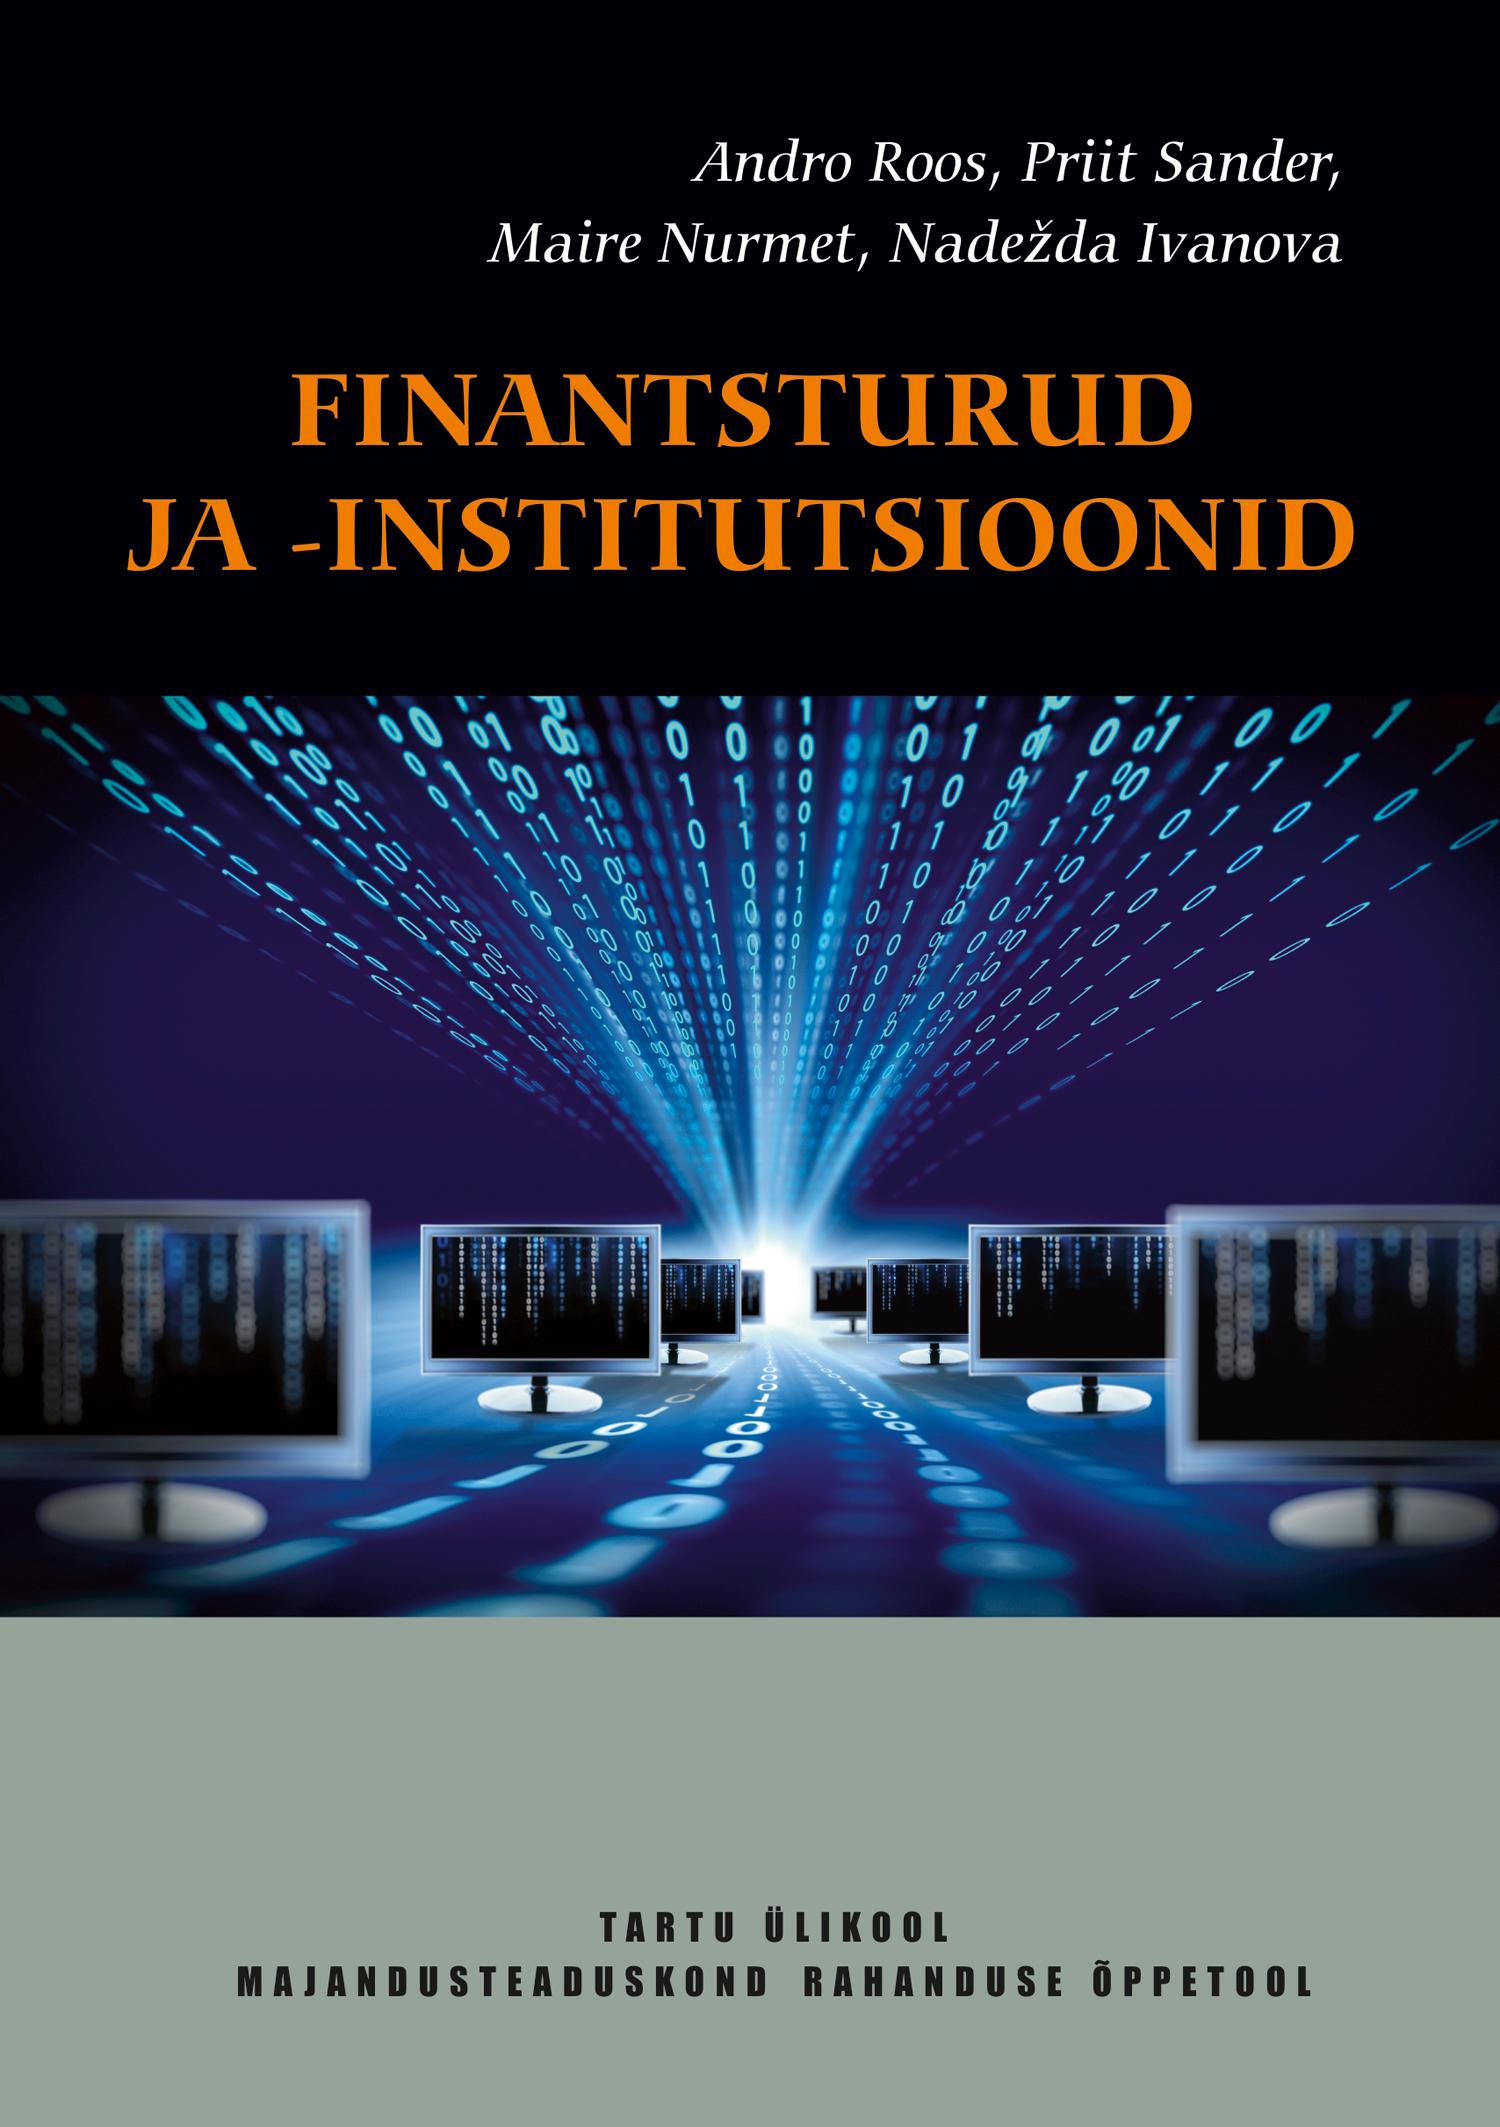 Finantsturud ja -institutsioonid